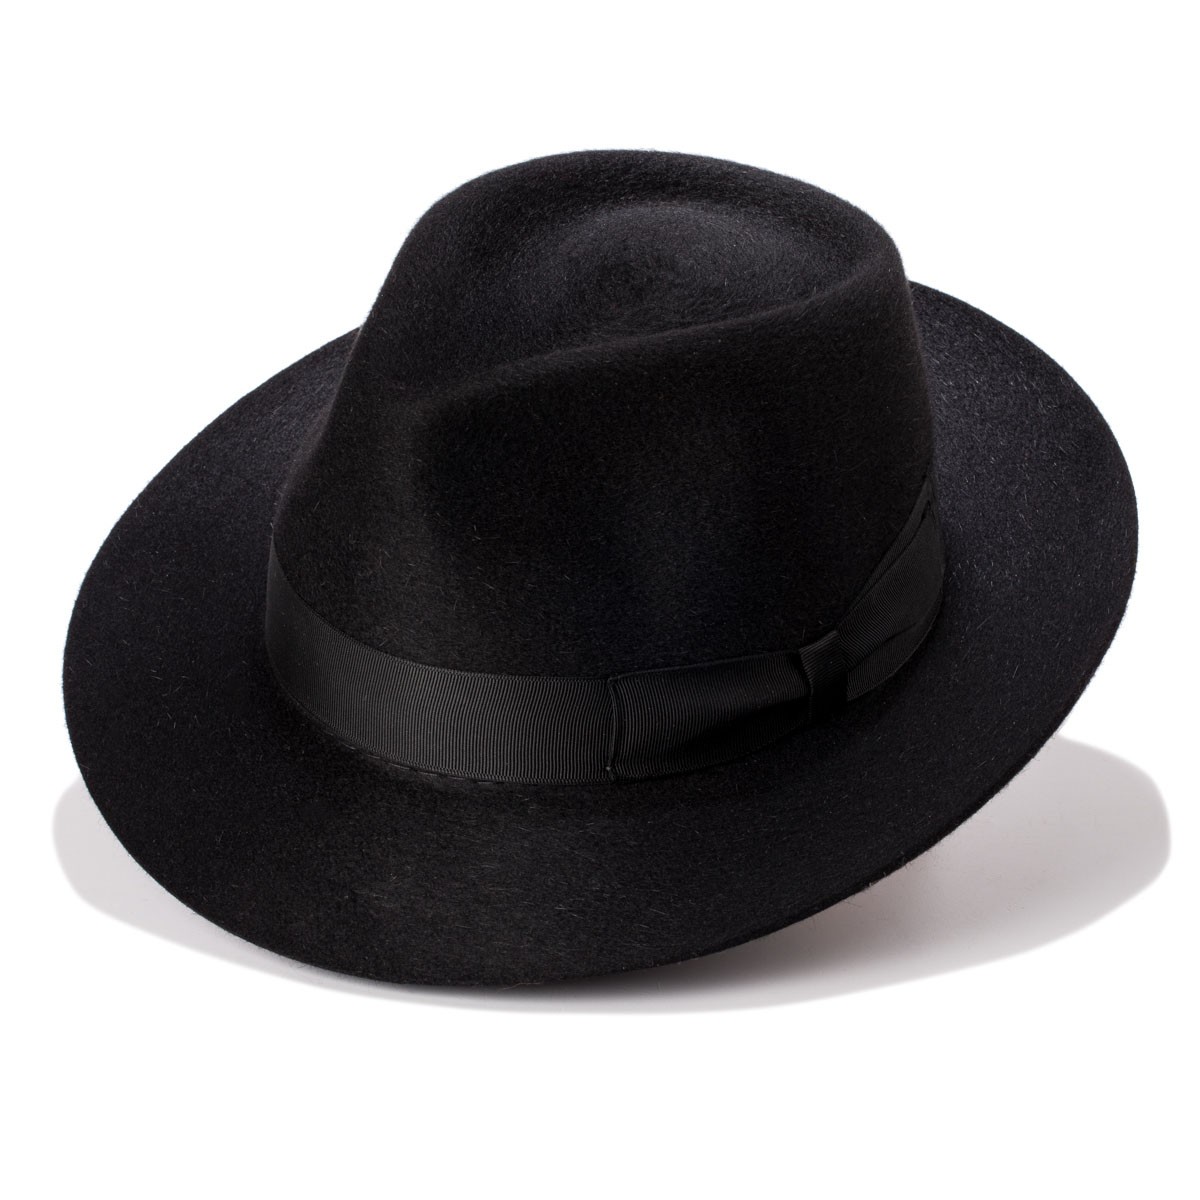 Esla sombrero lana merino con forma clásica fedora y copa gota de agua.